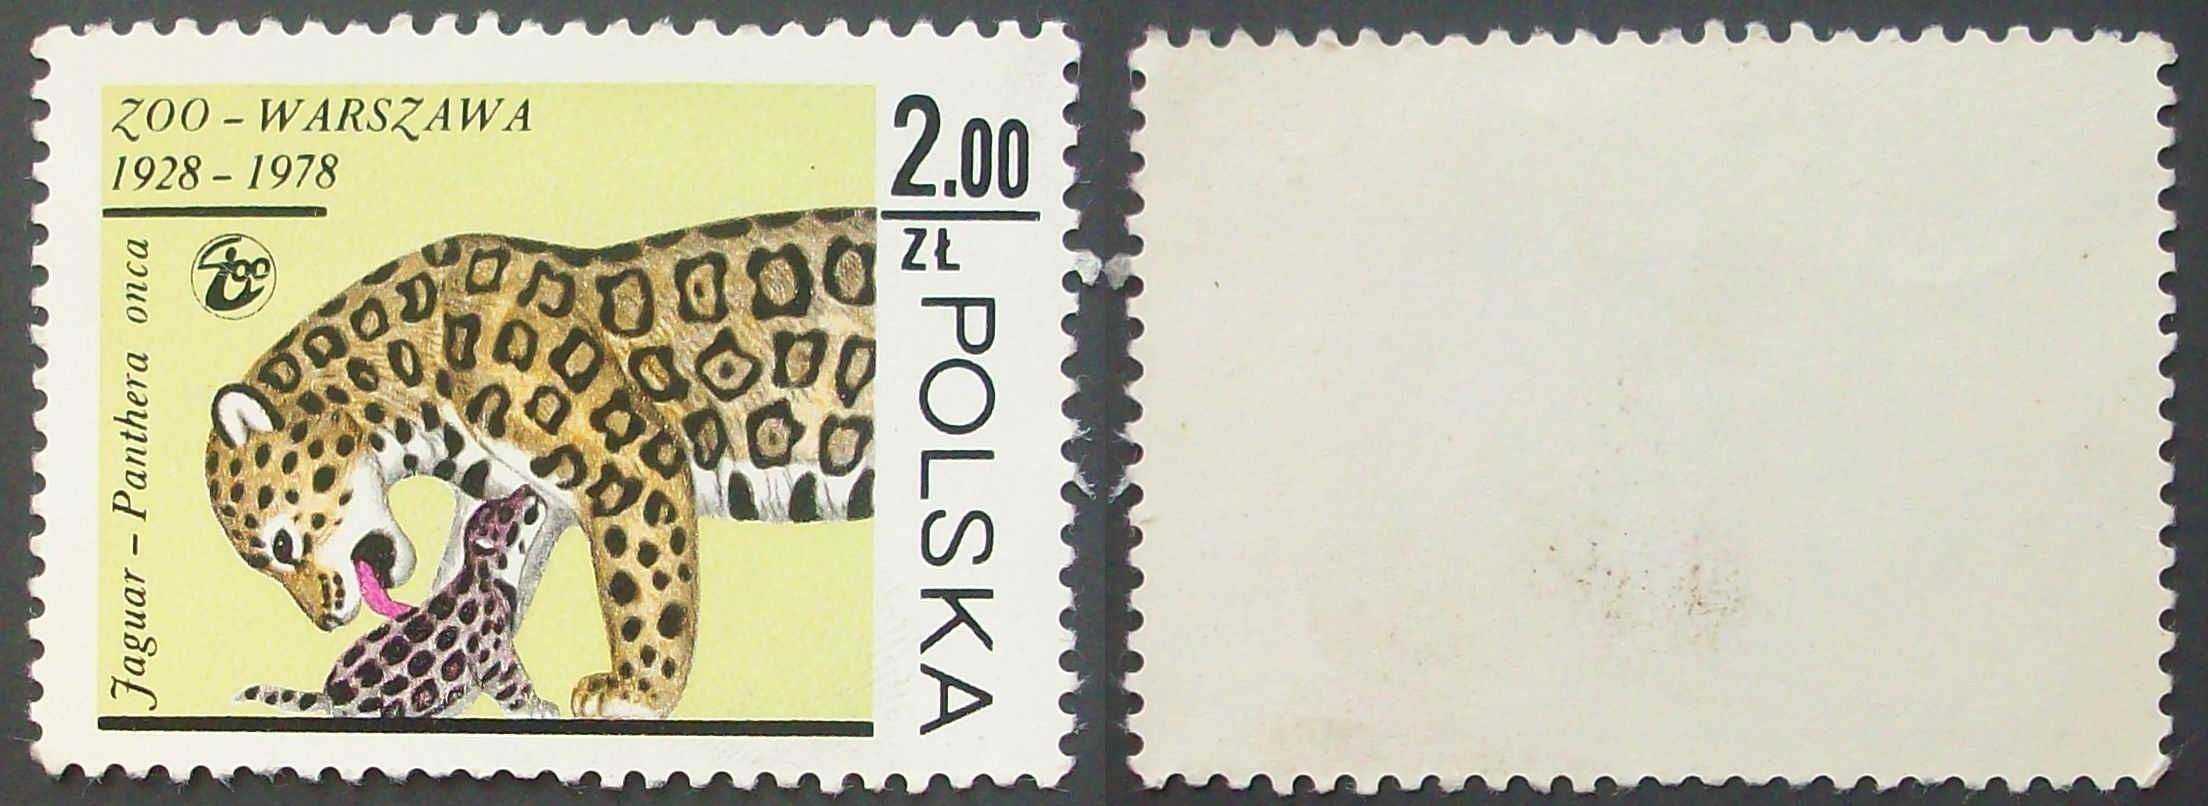 L Znaczki polskie rok 1978 kwartał IV